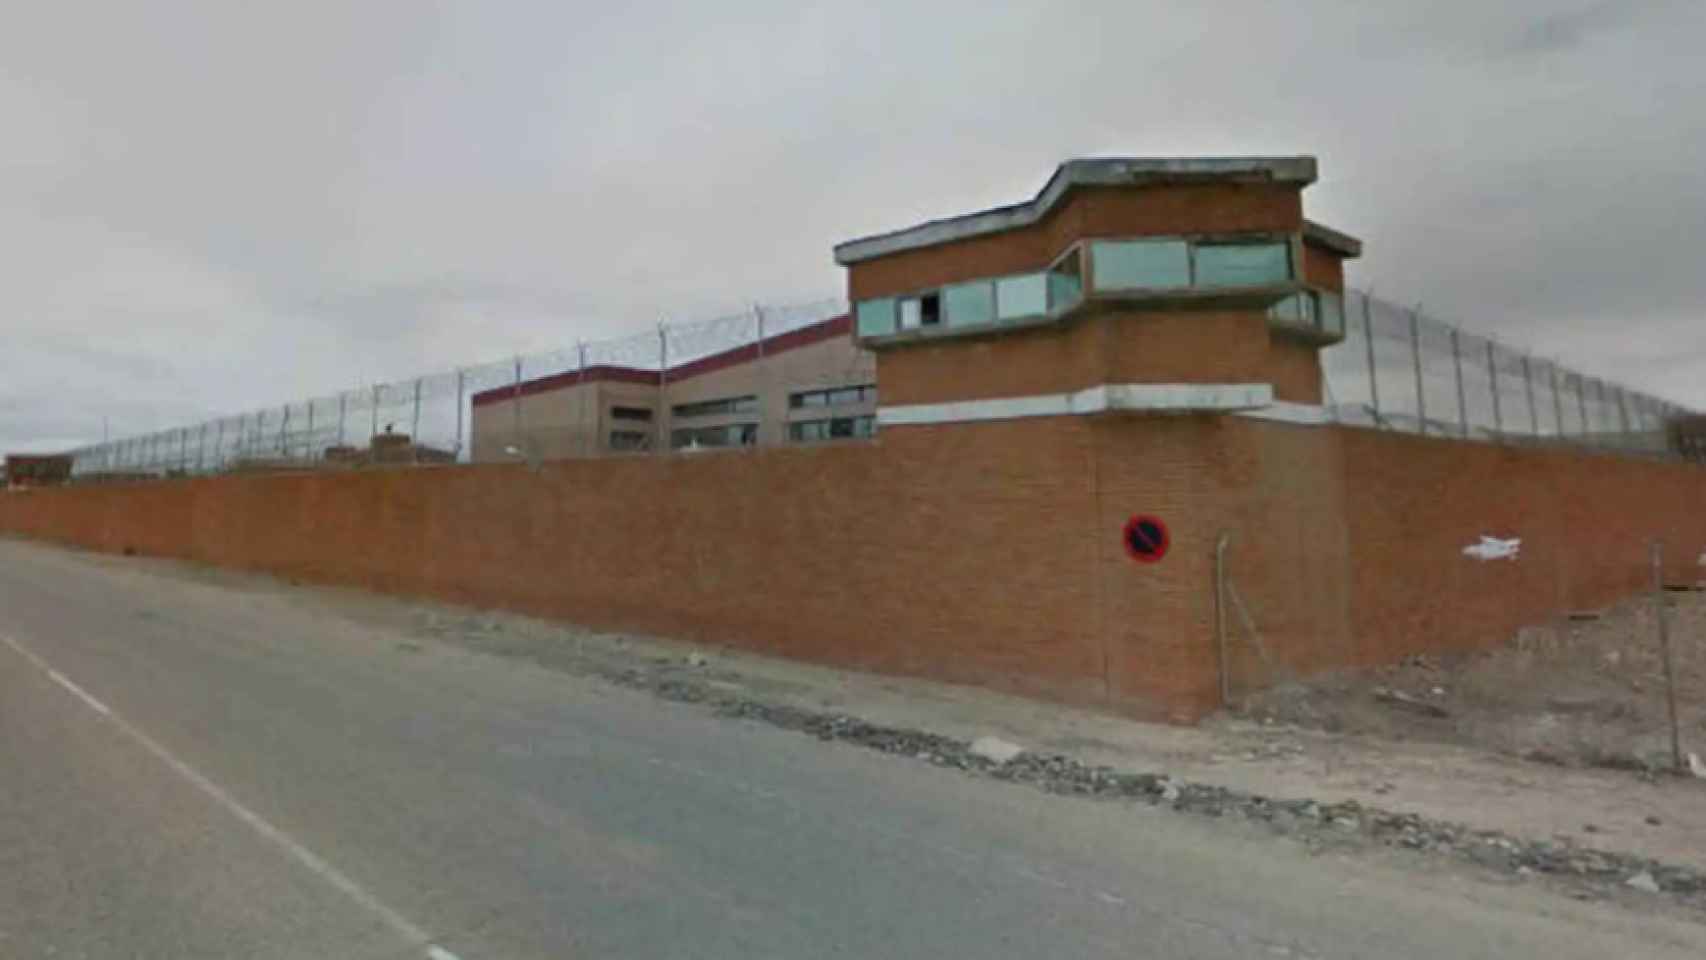 Centro Penitenciario Ocaña I.